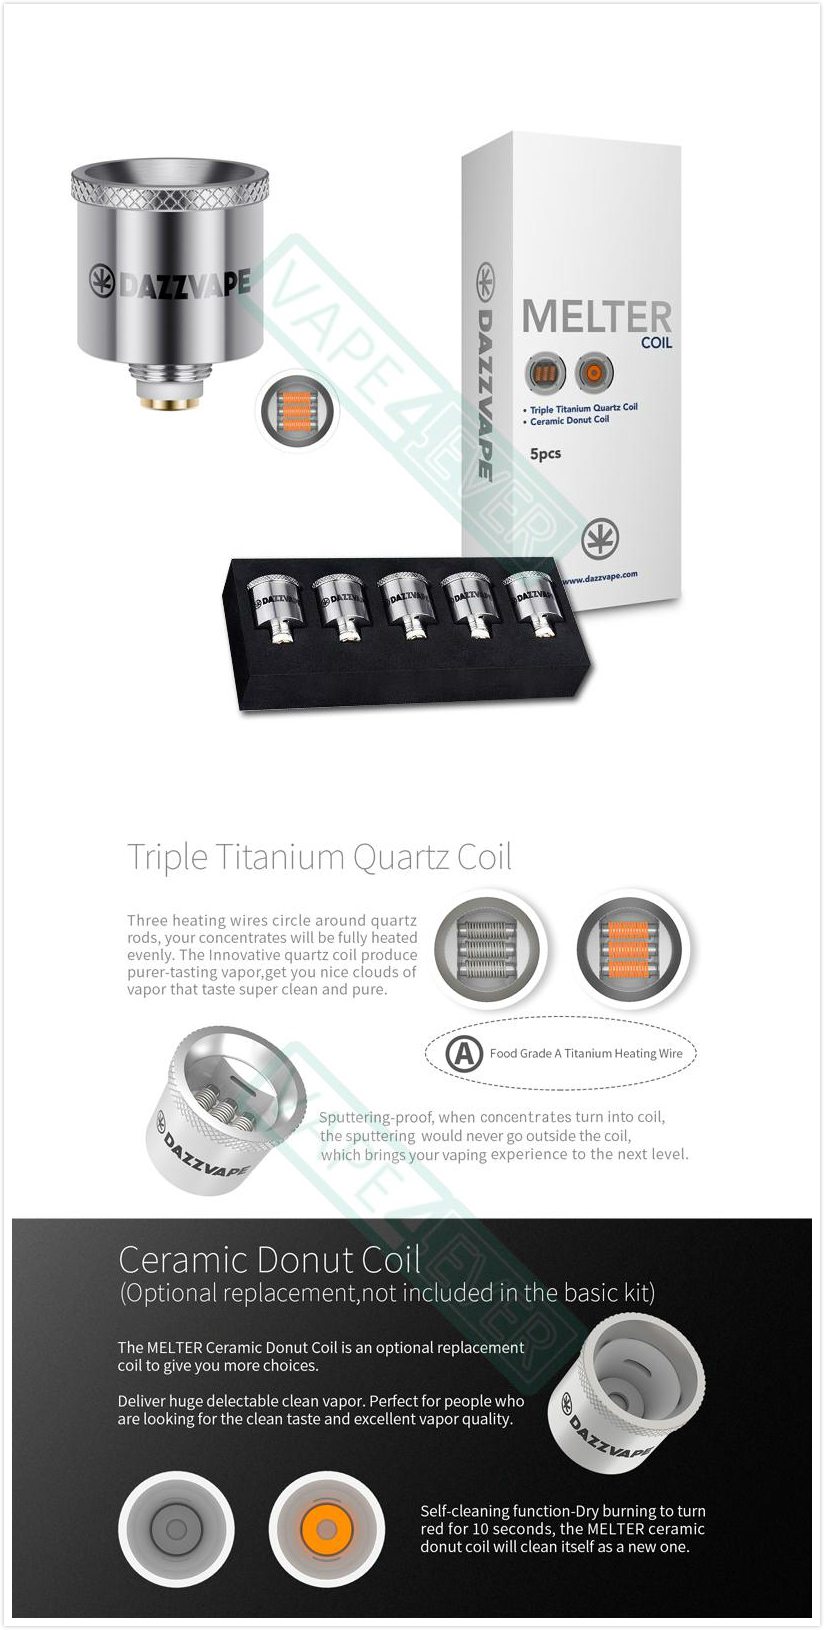 Dazzvape Melter Wax Vaporizer Replacement Coil Triple Titanium Quartz Coil 5pcs/pack Instruction